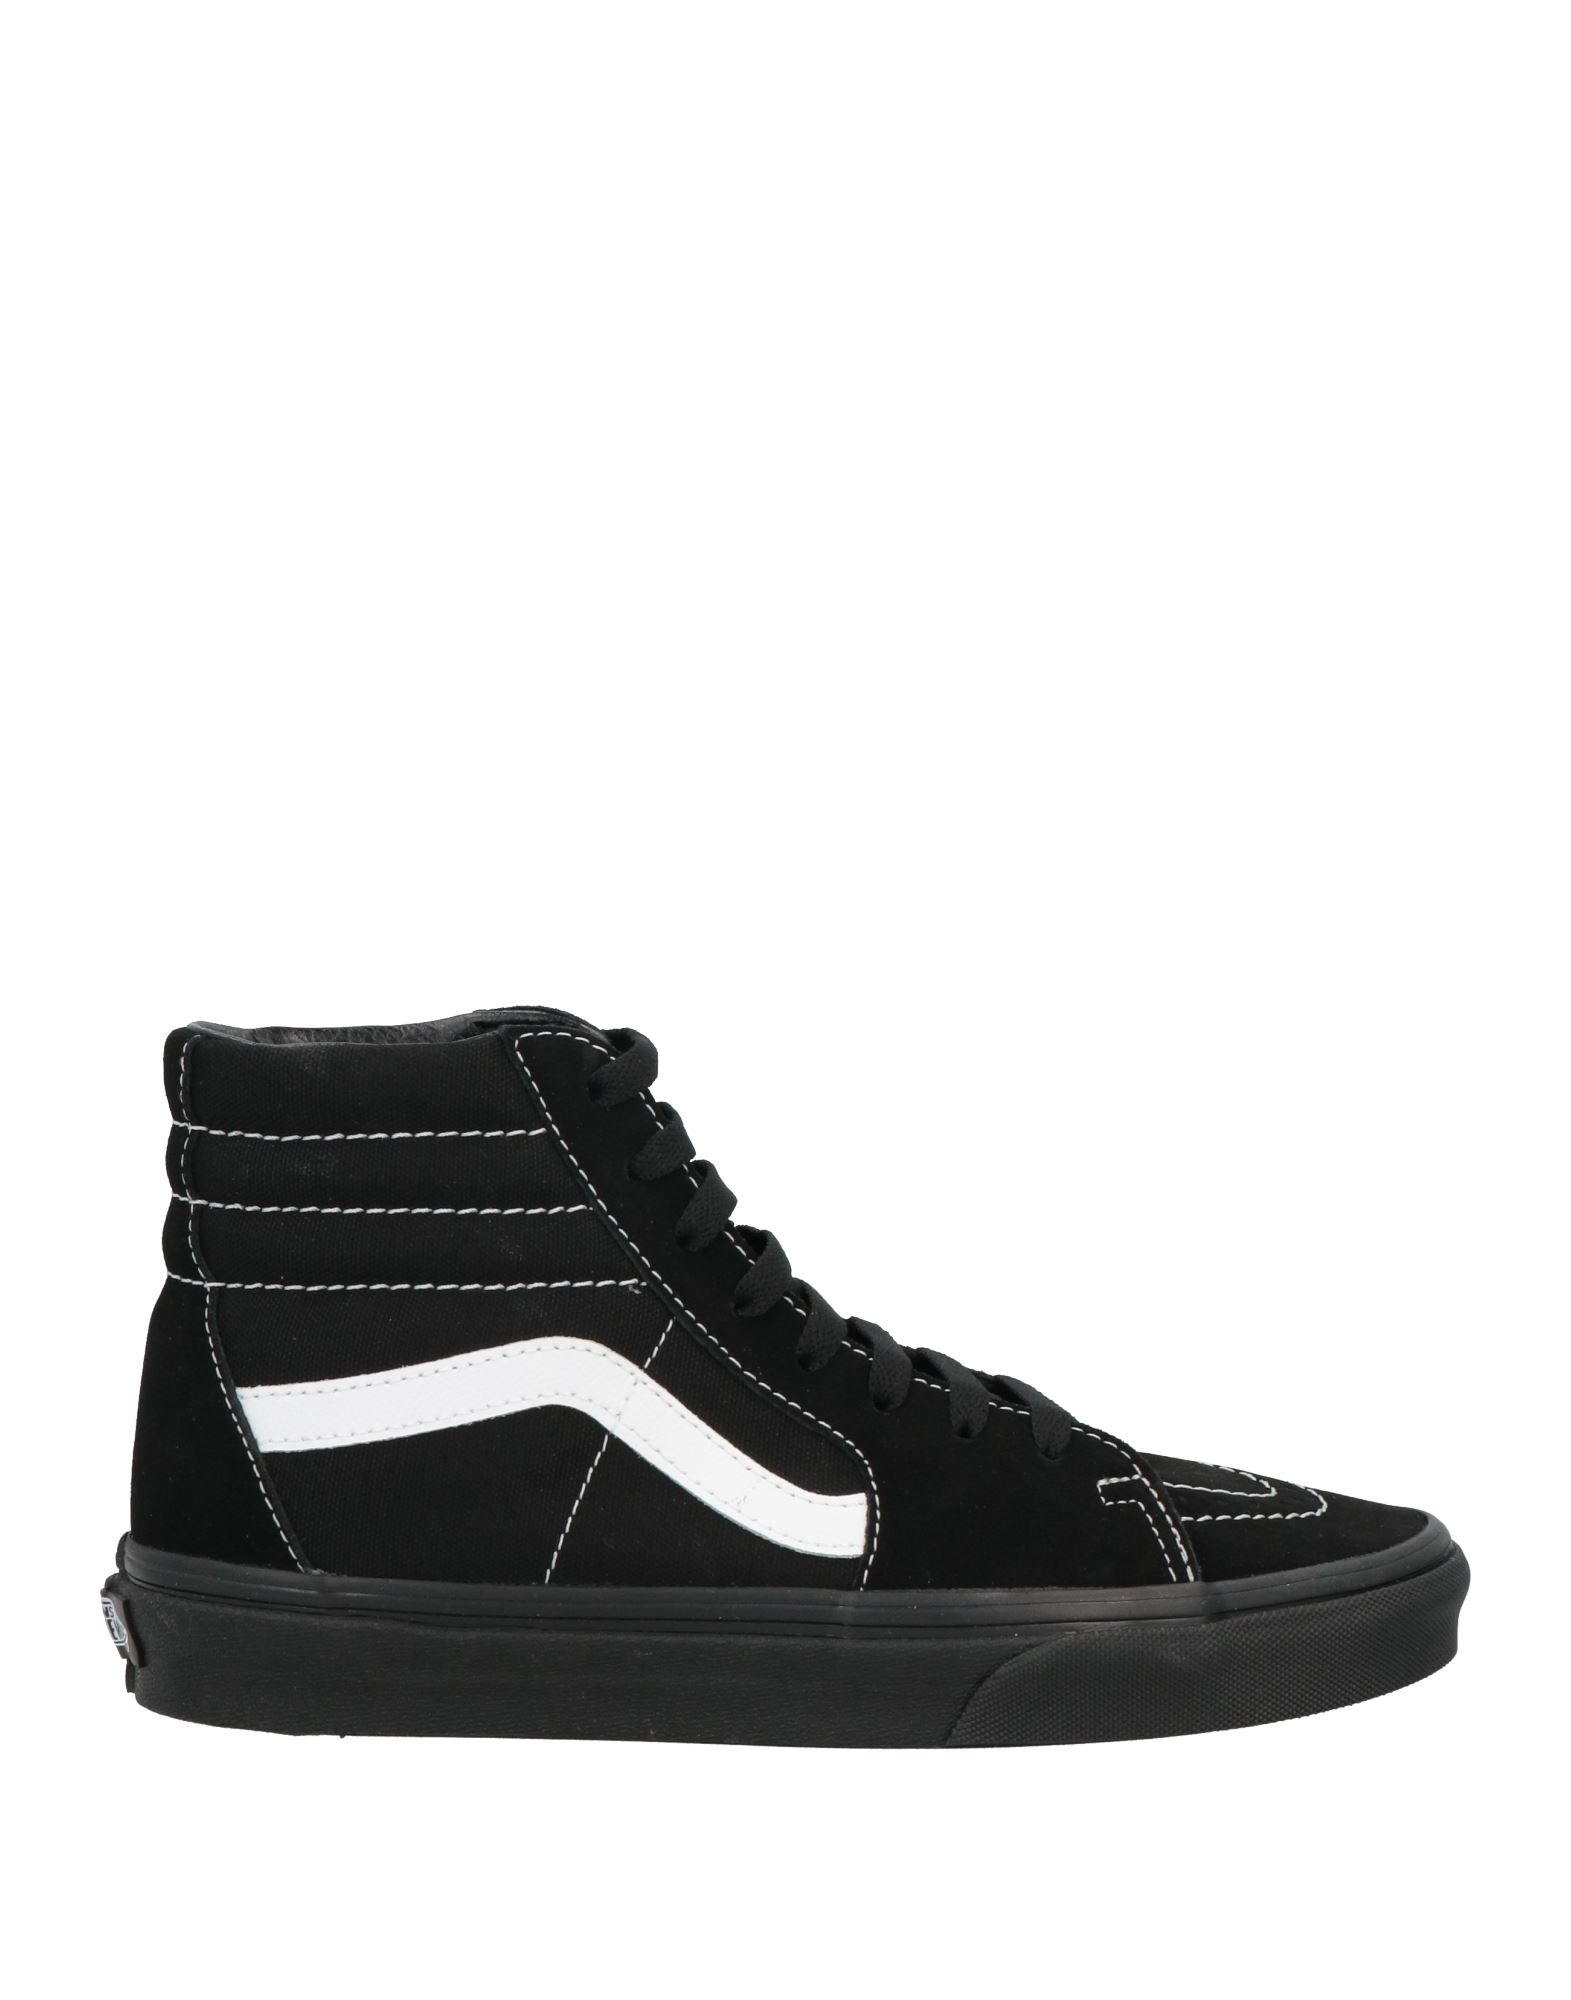 Vans Sneakers In Black